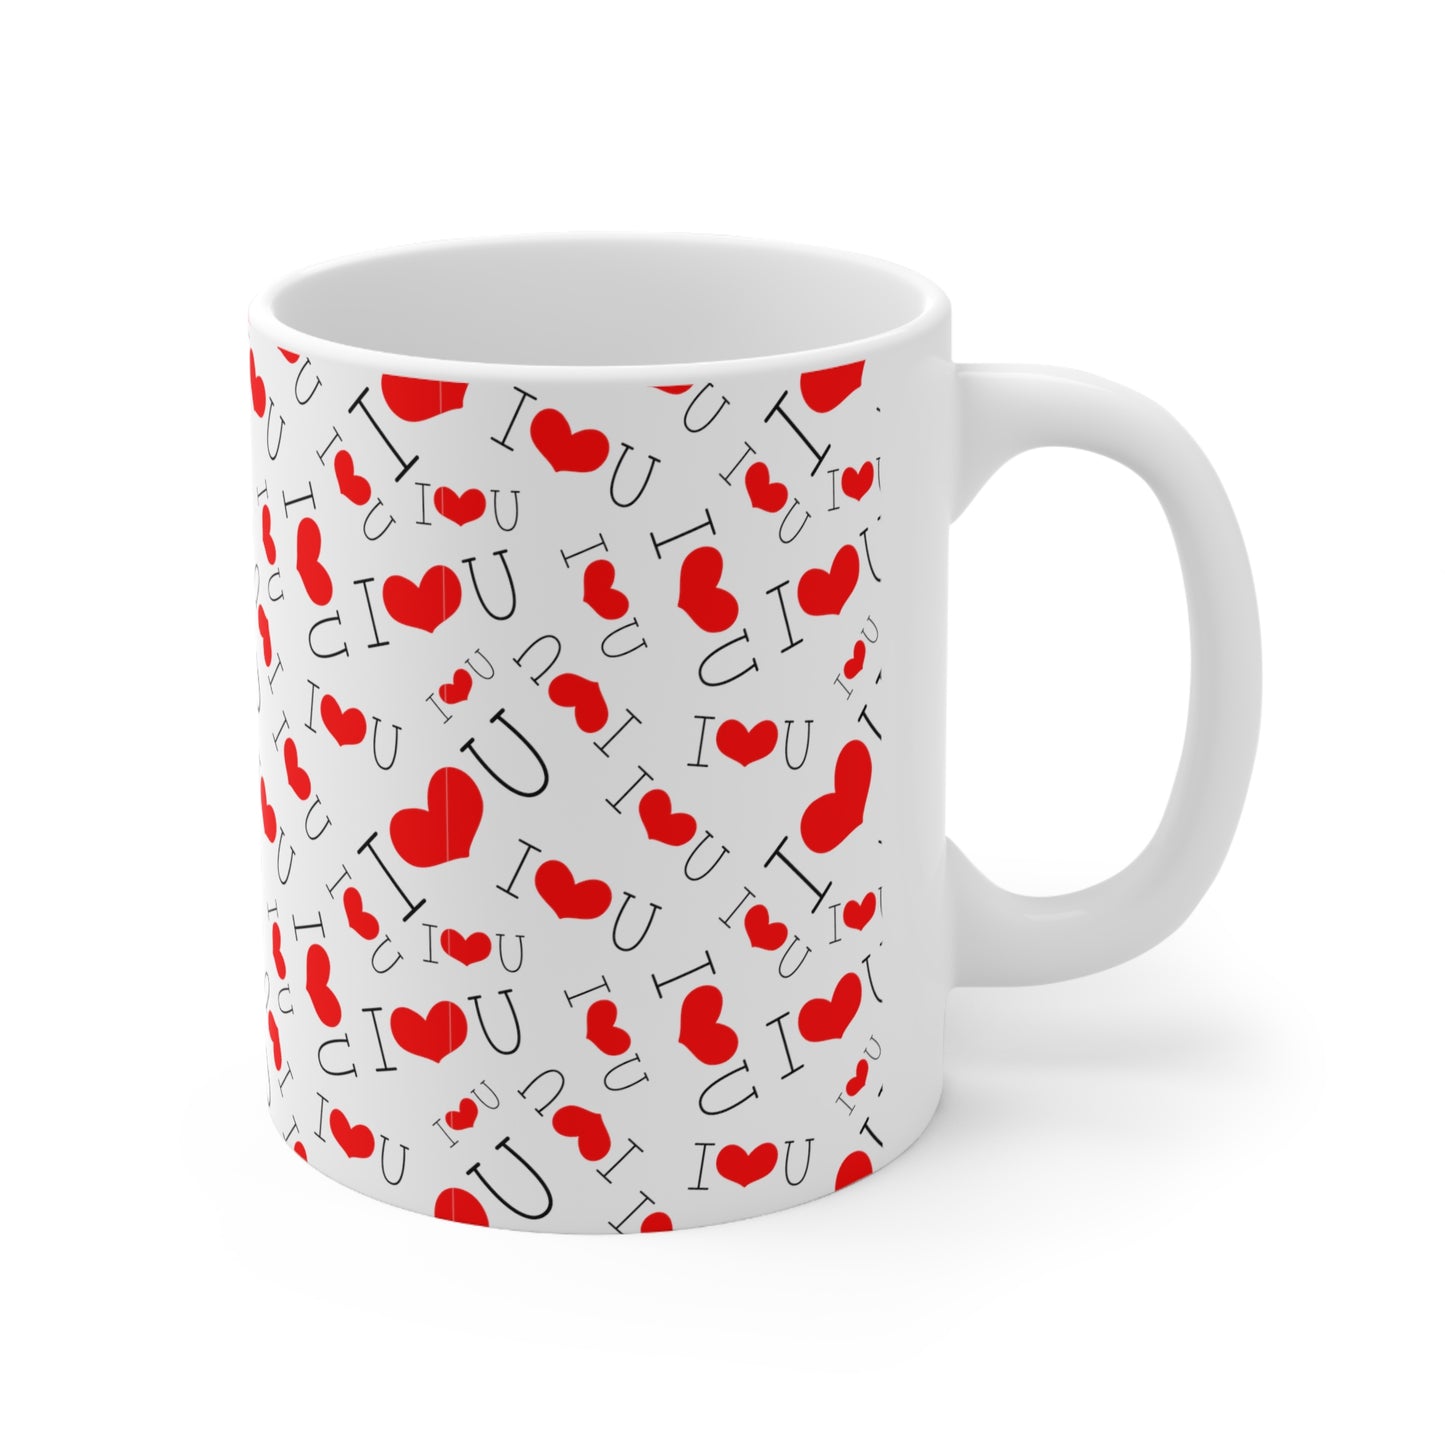 I Love You Ceramic Mug 11oz